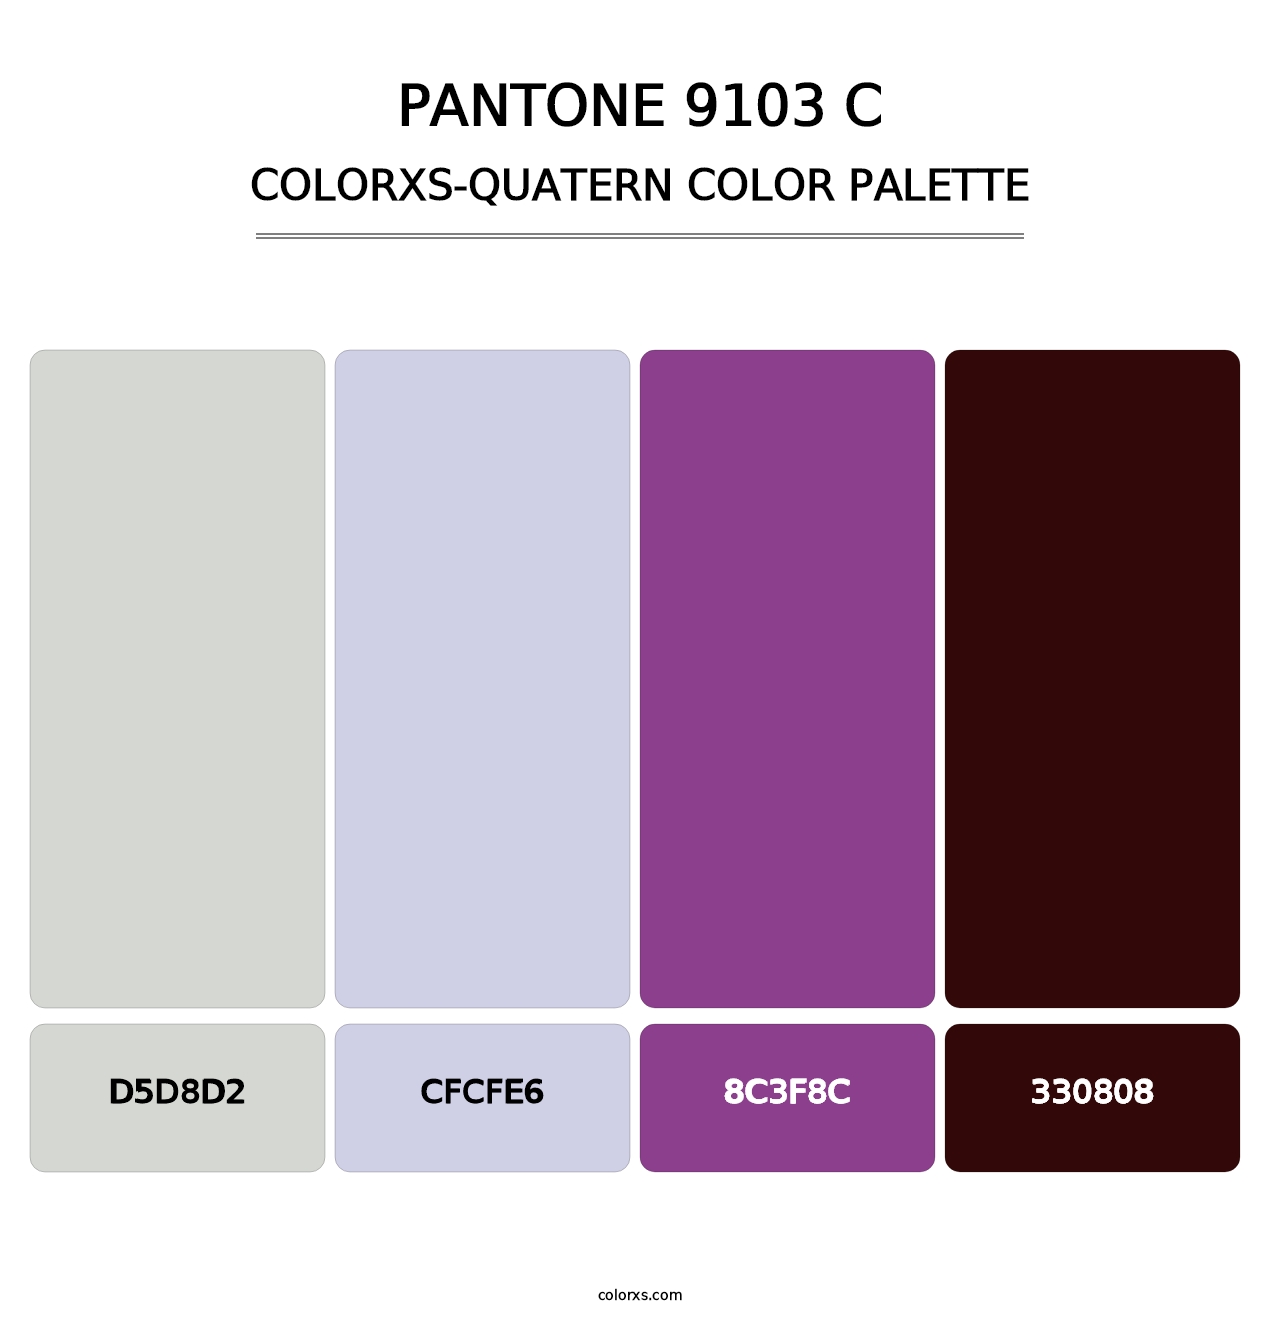 PANTONE 9103 C - Colorxs Quatern Palette